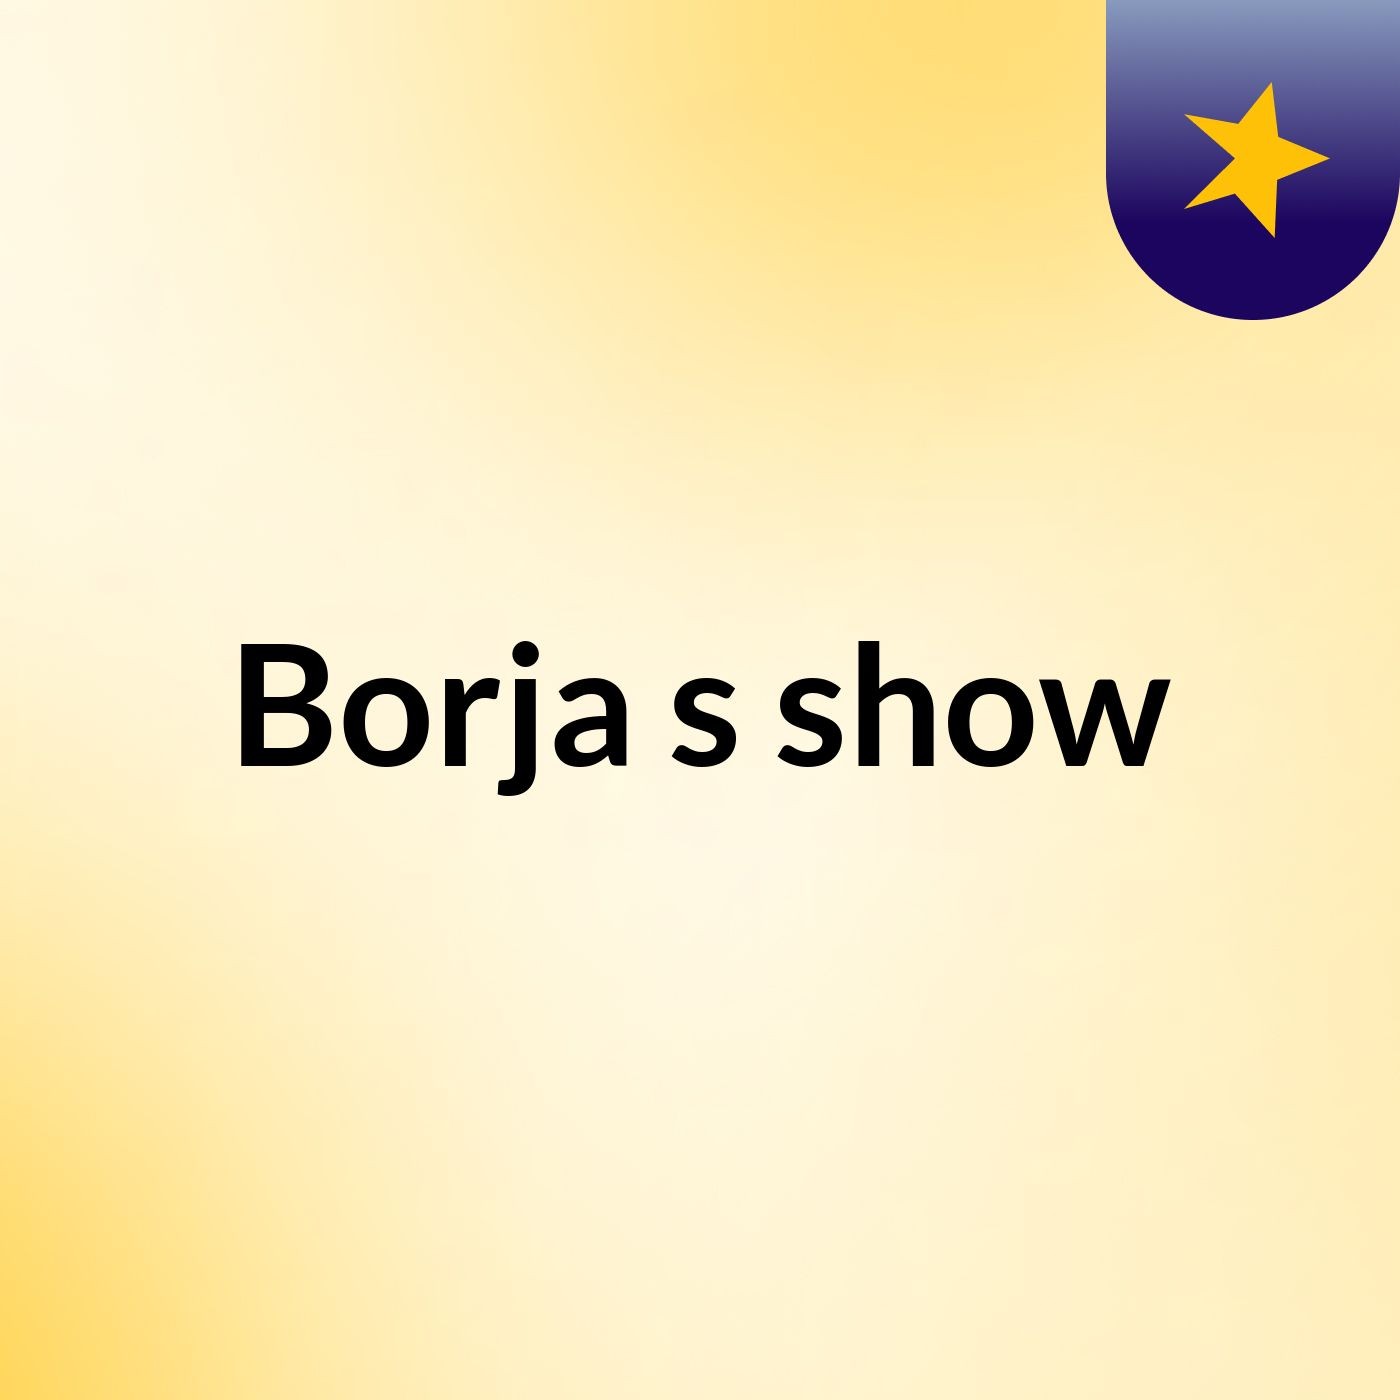 Borja's show